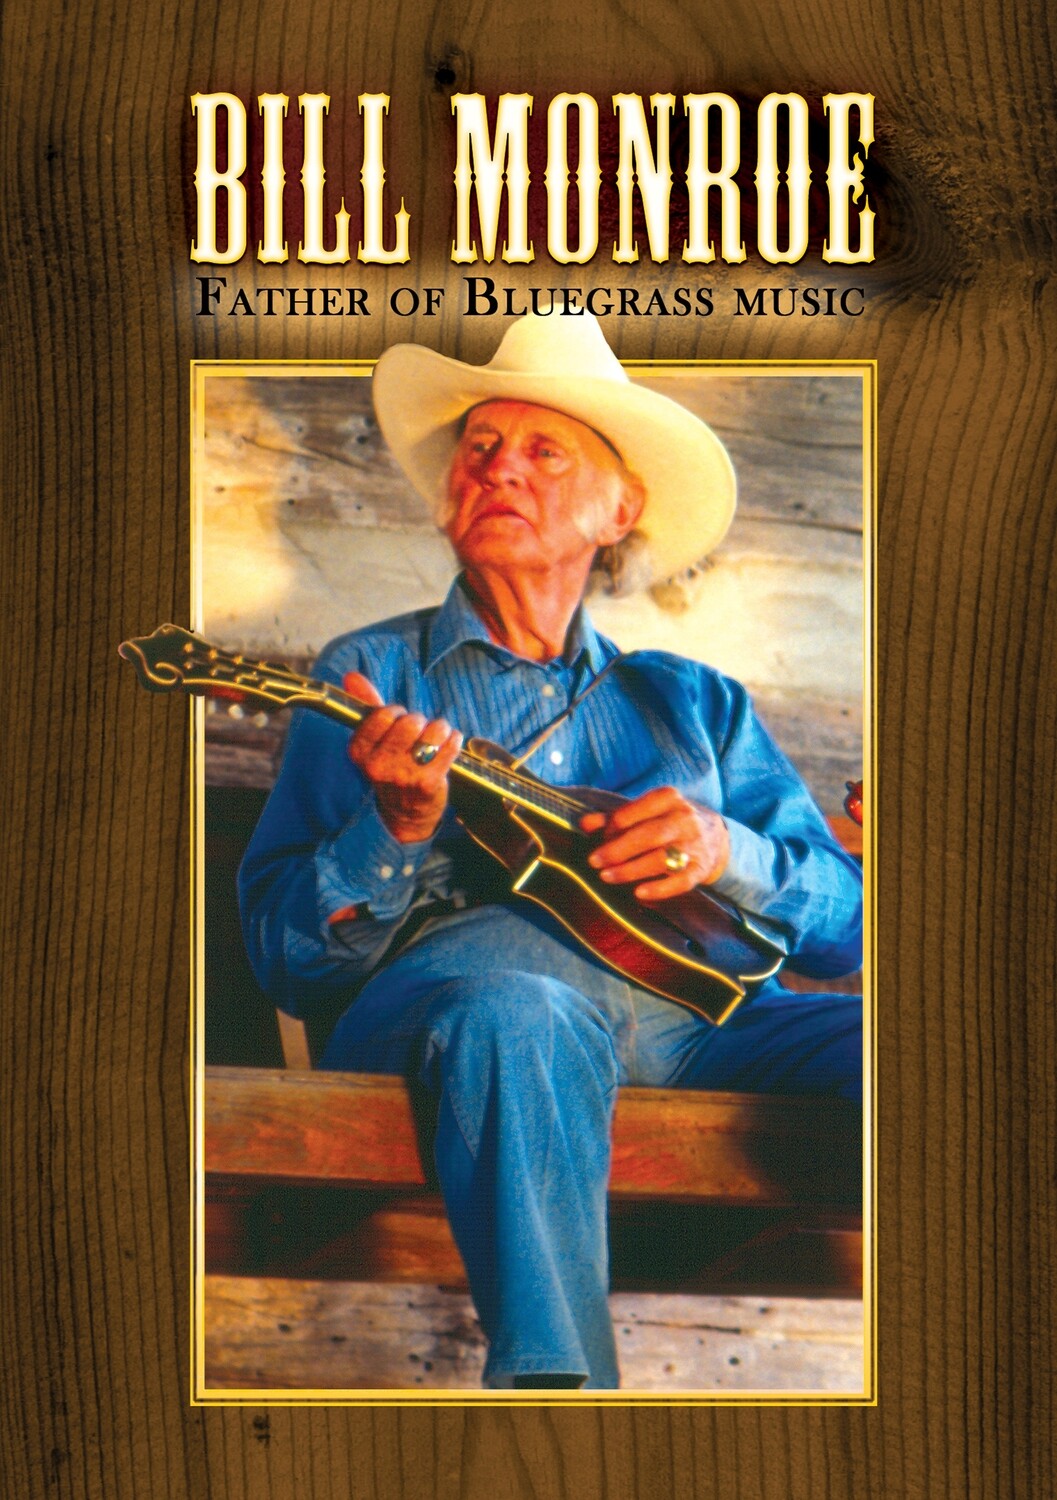 Bill Monroe - Father of Bluegrass Music